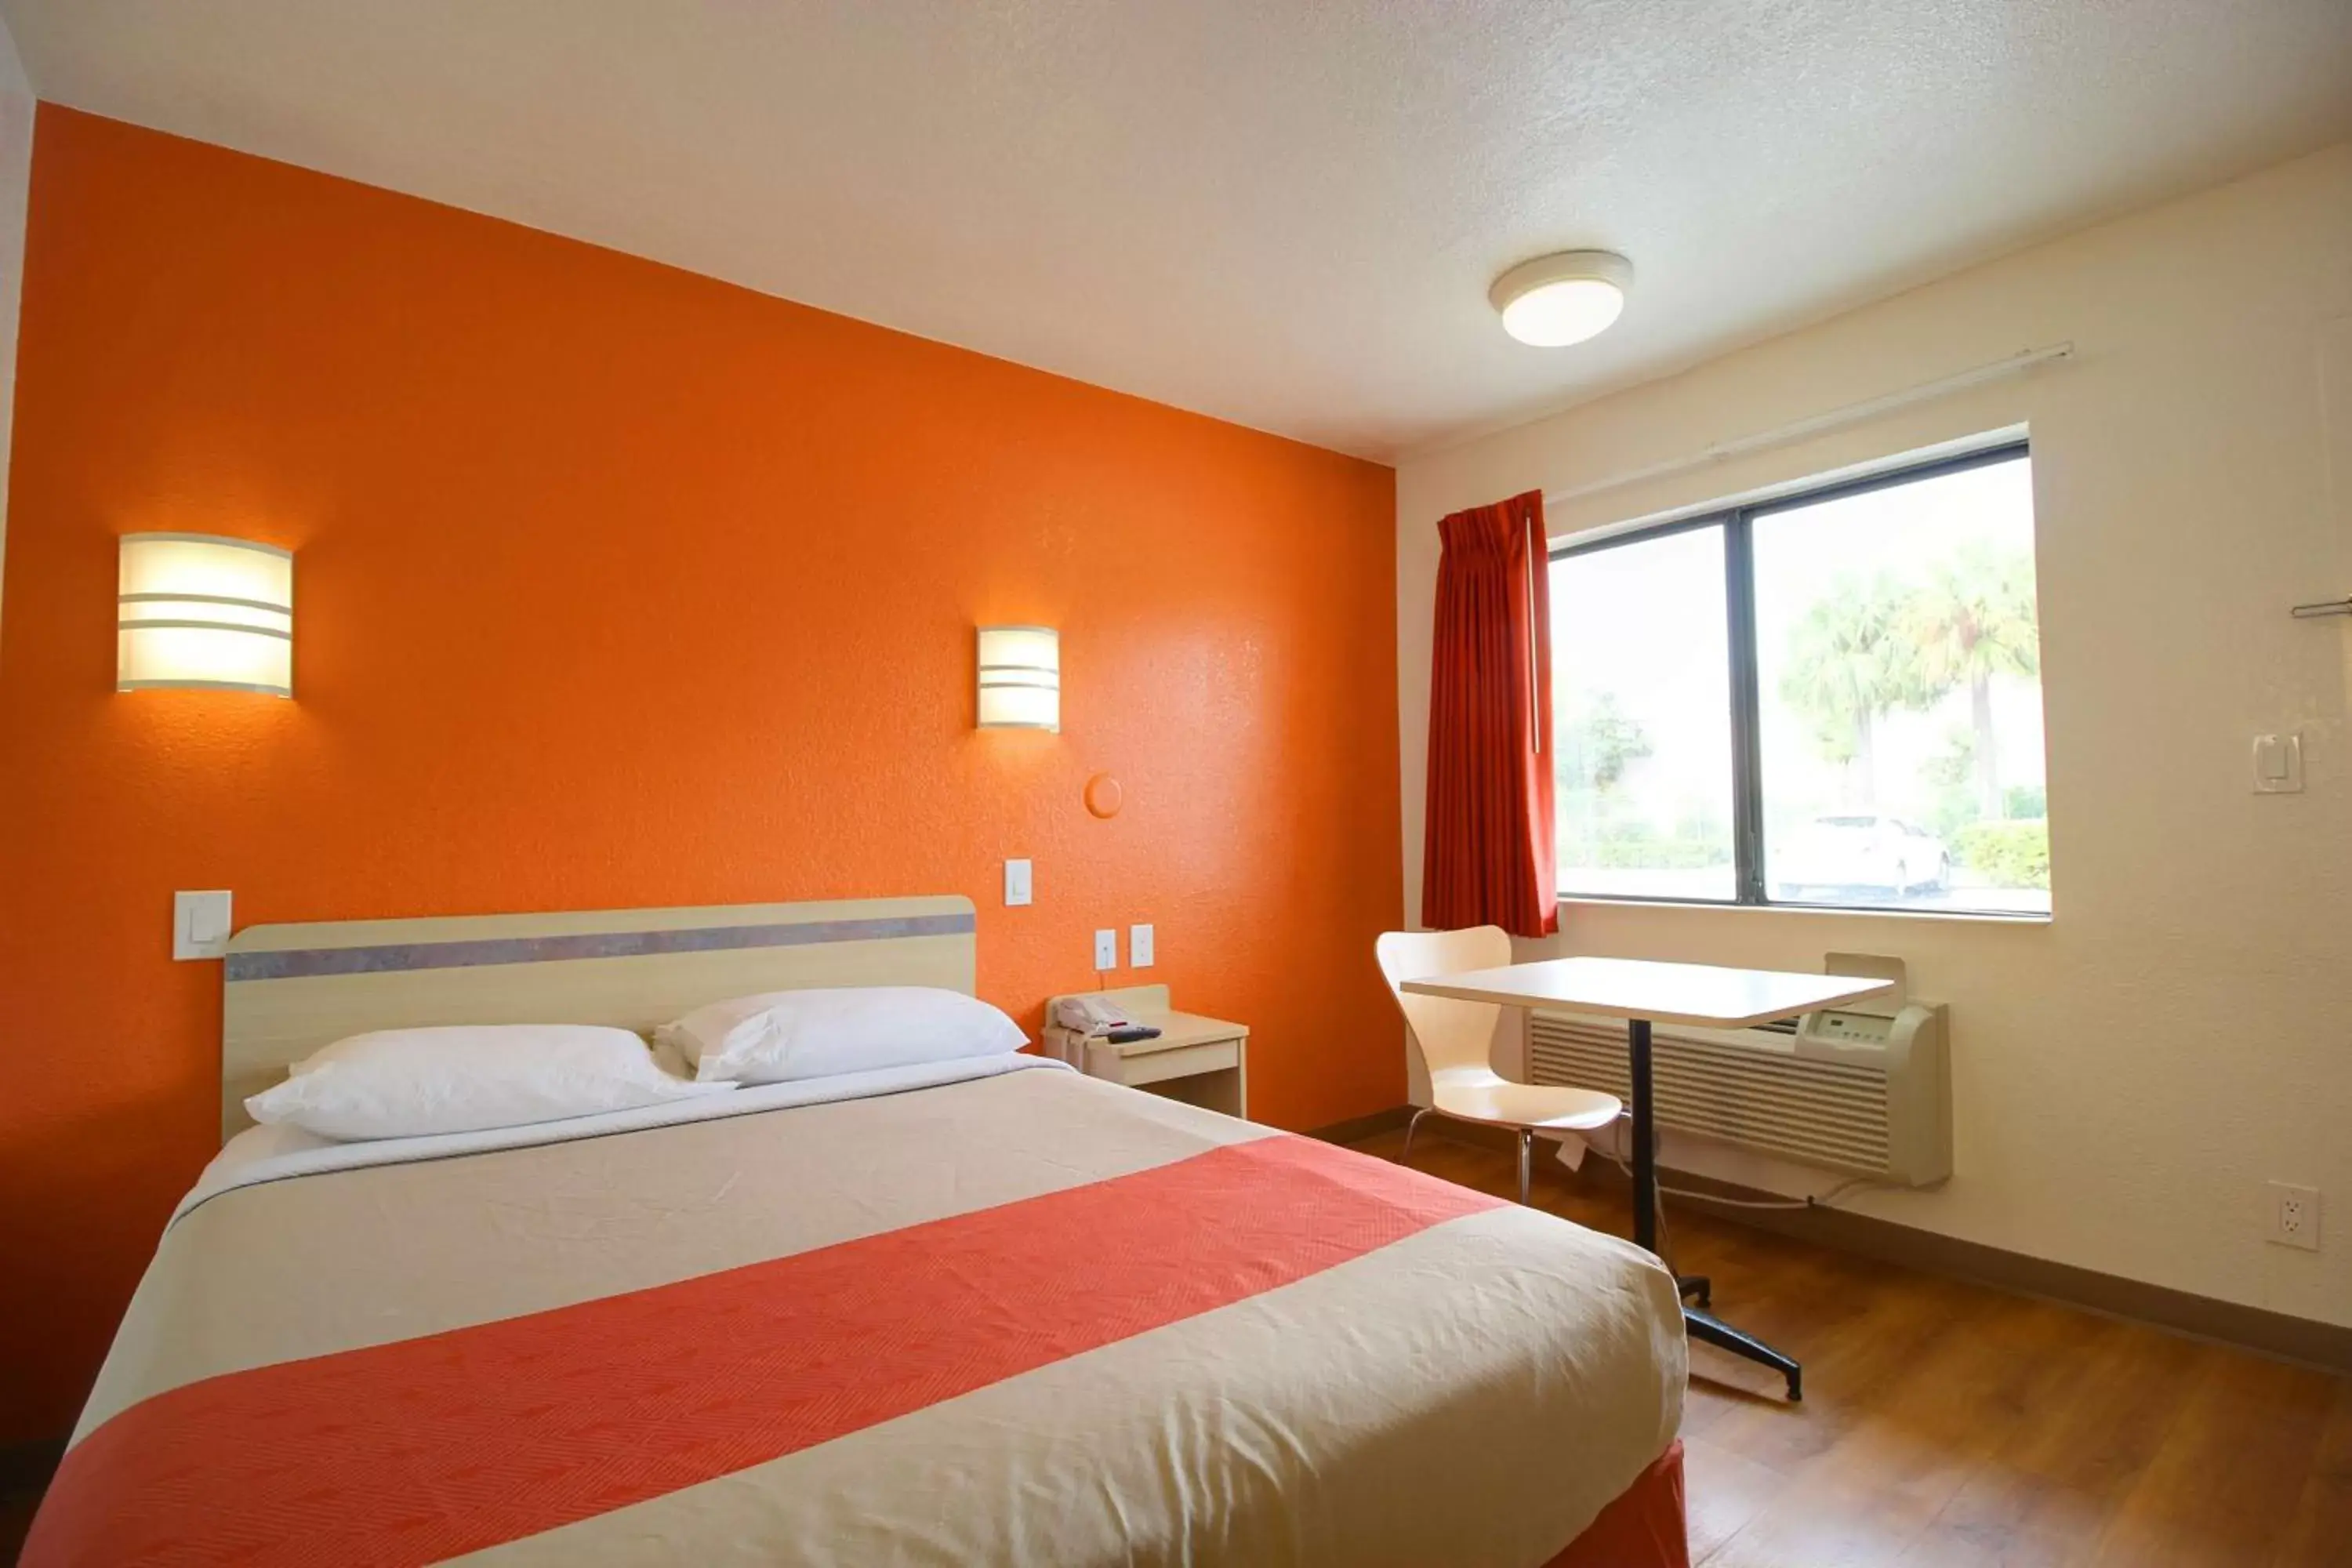 Bedroom, Room Photo in Motel 6-Lantana, FL